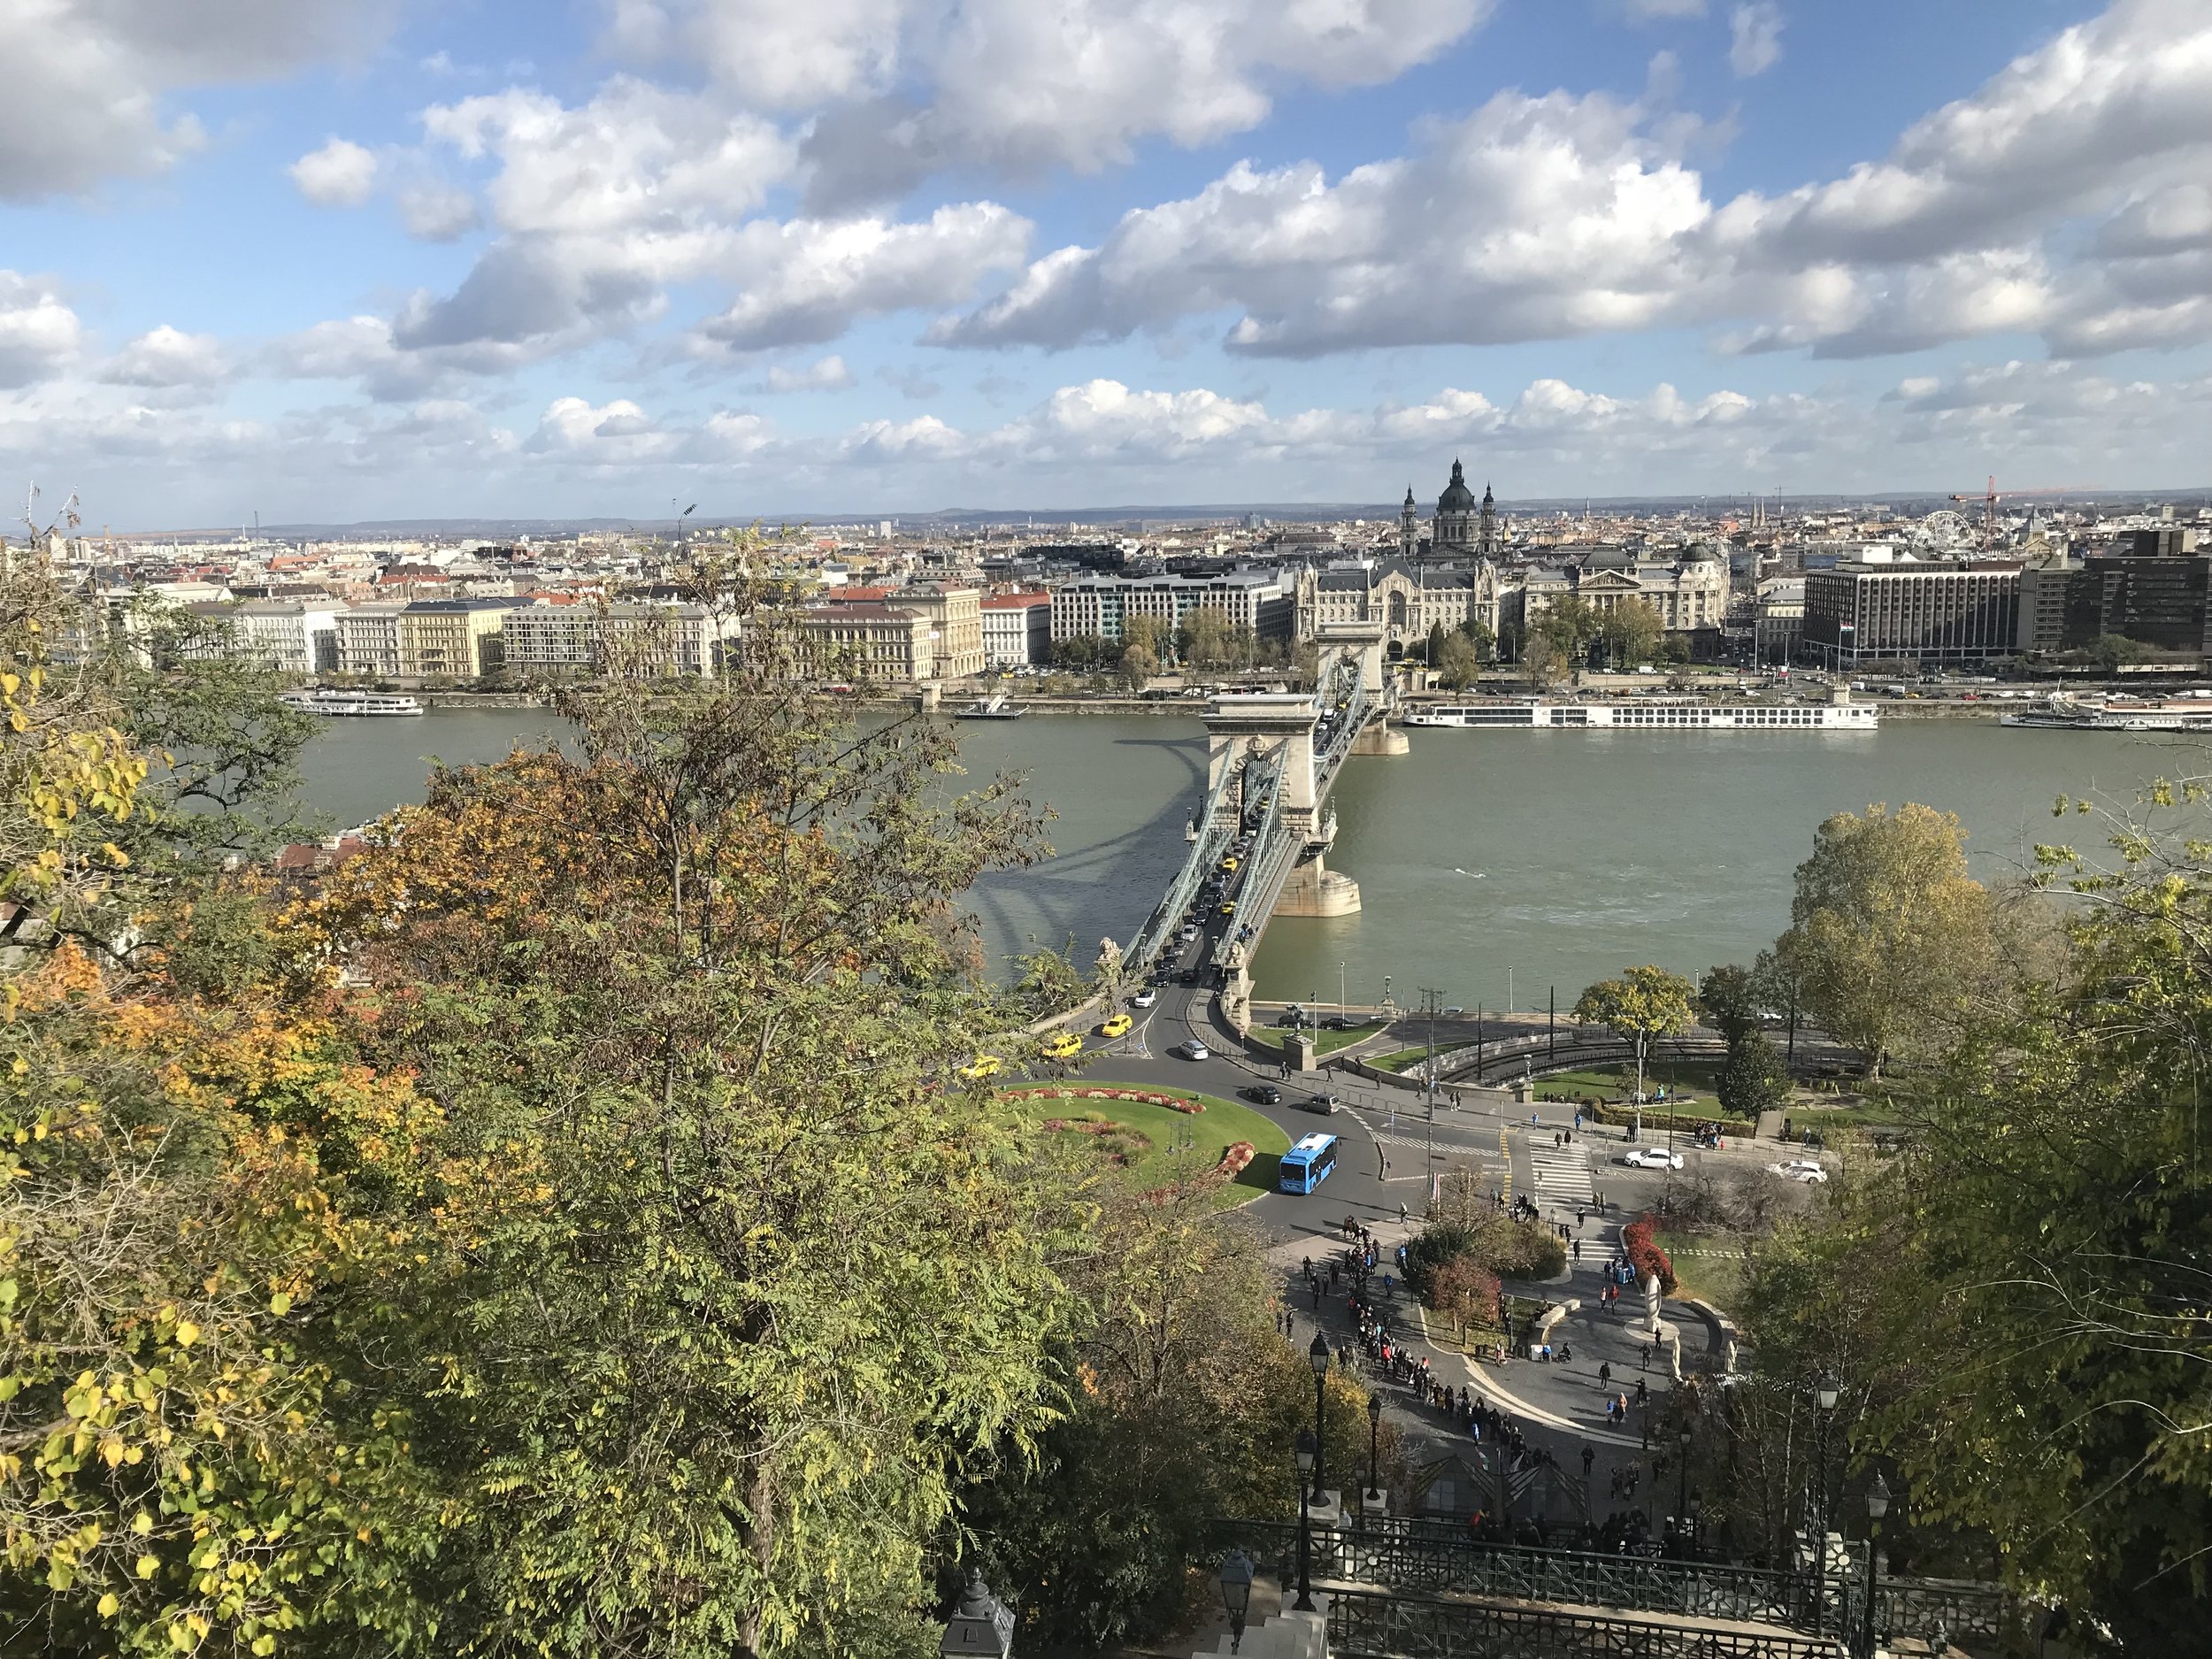 The Danube and Chain Bridge